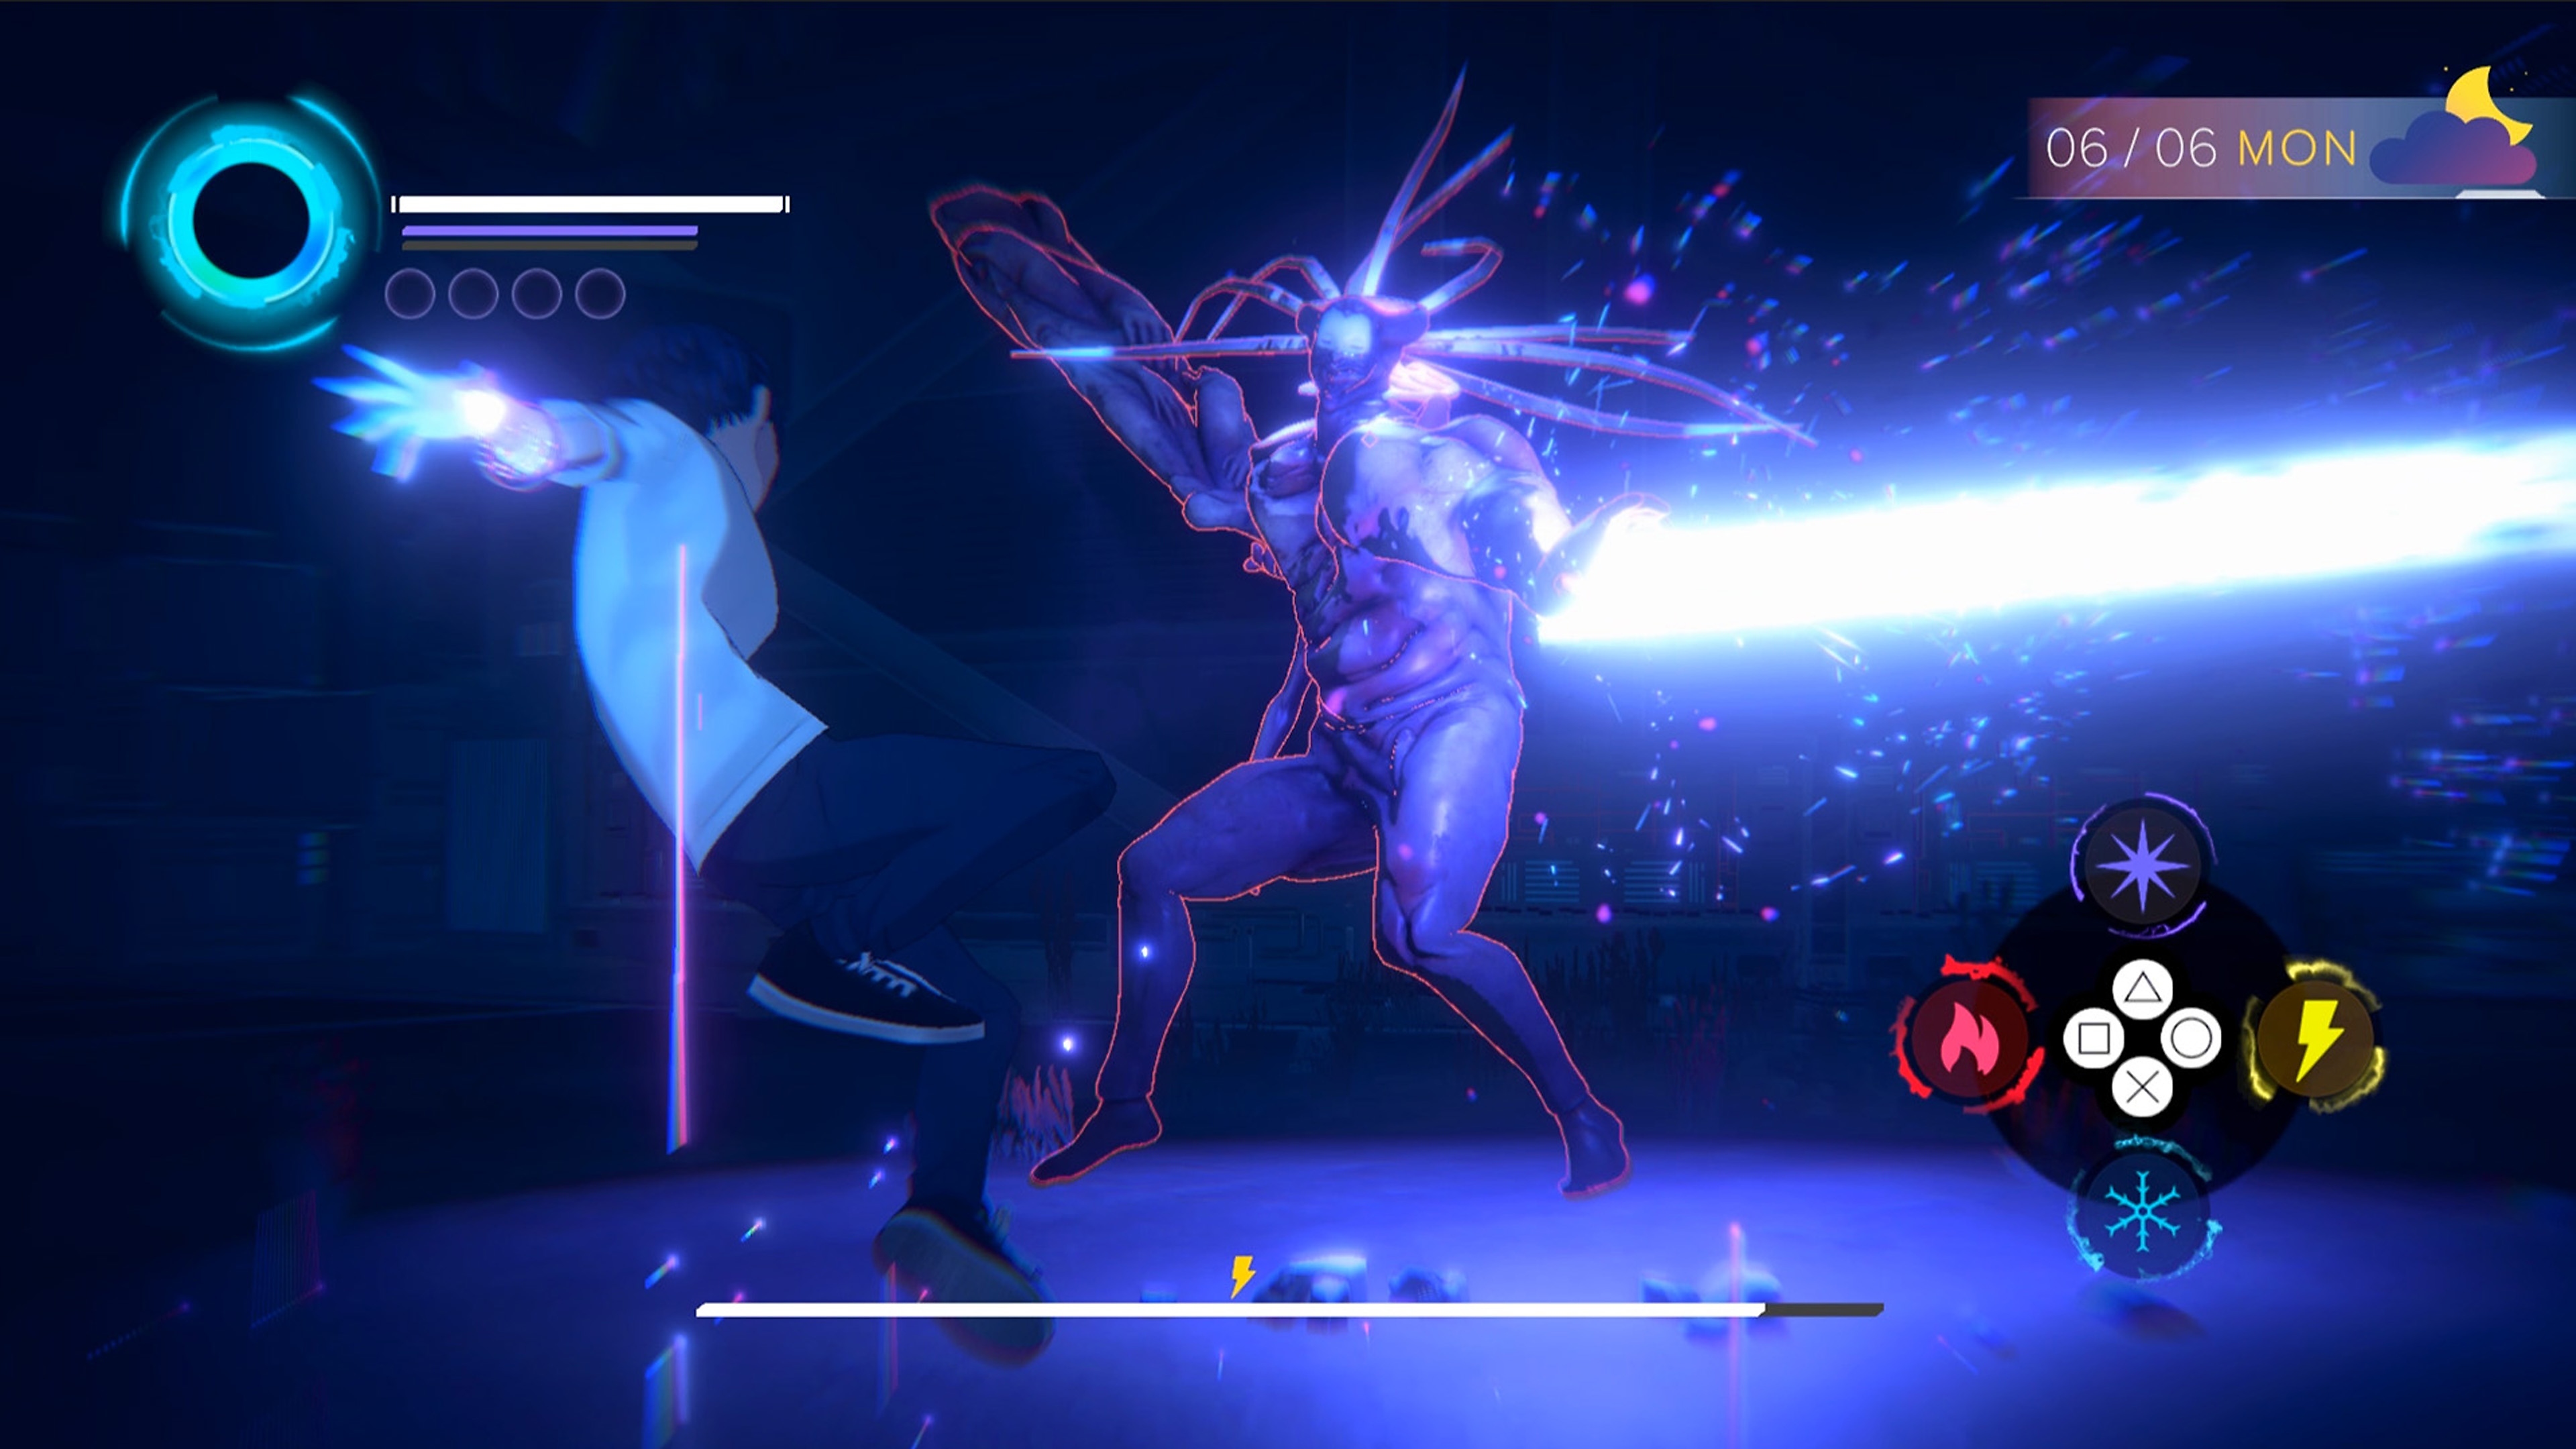 Eternights - Capture d'écran montrant un lycéen combattant un immense démon humanoïde.